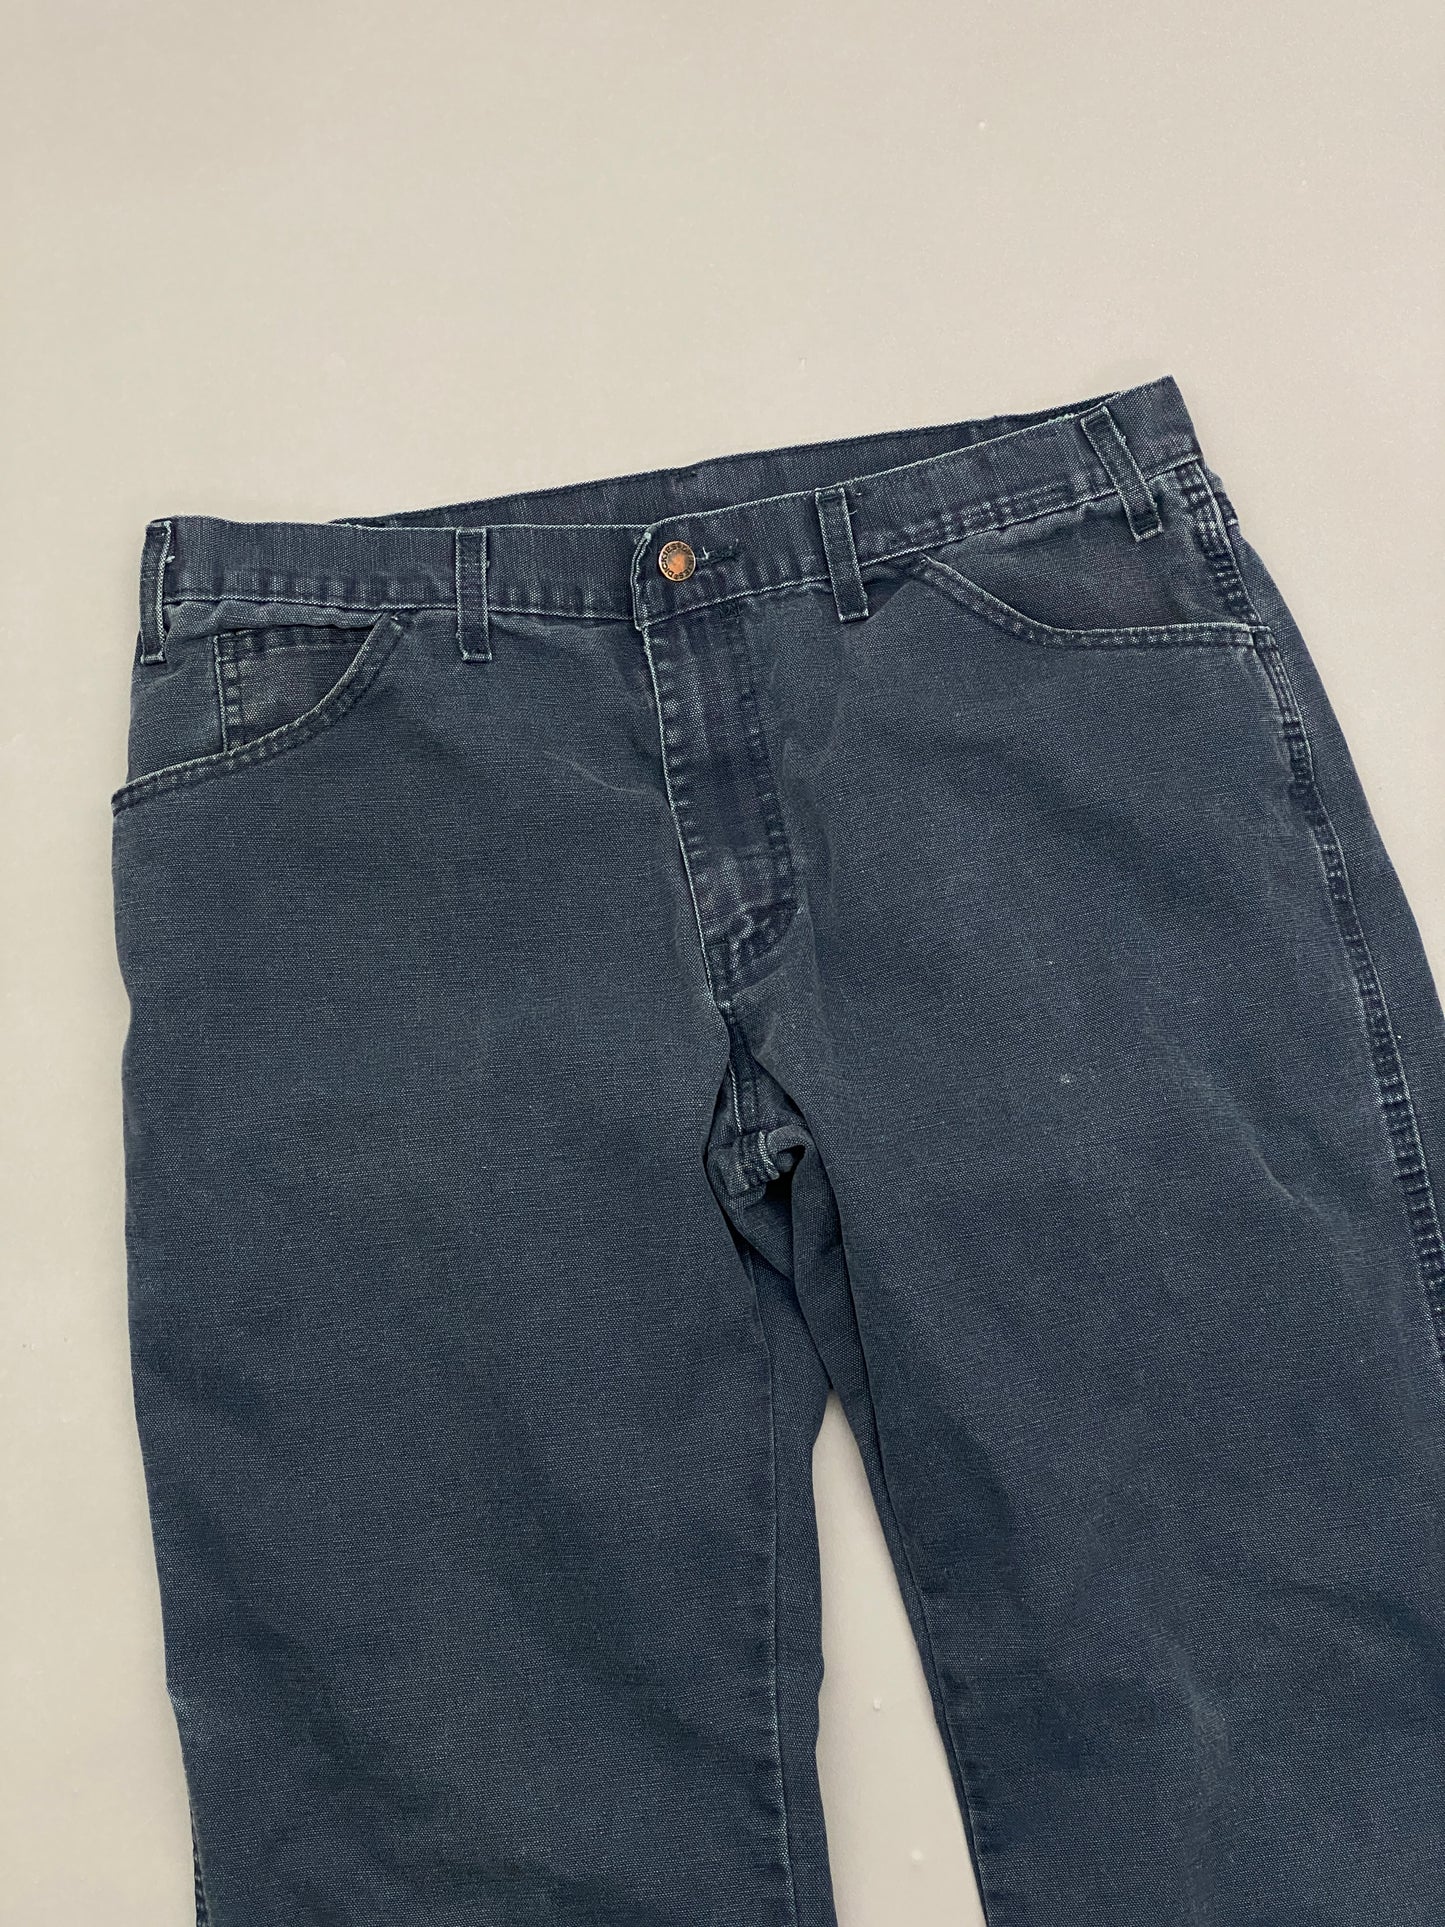 Dickies Carpenter Vintage Pants - 34 x 34